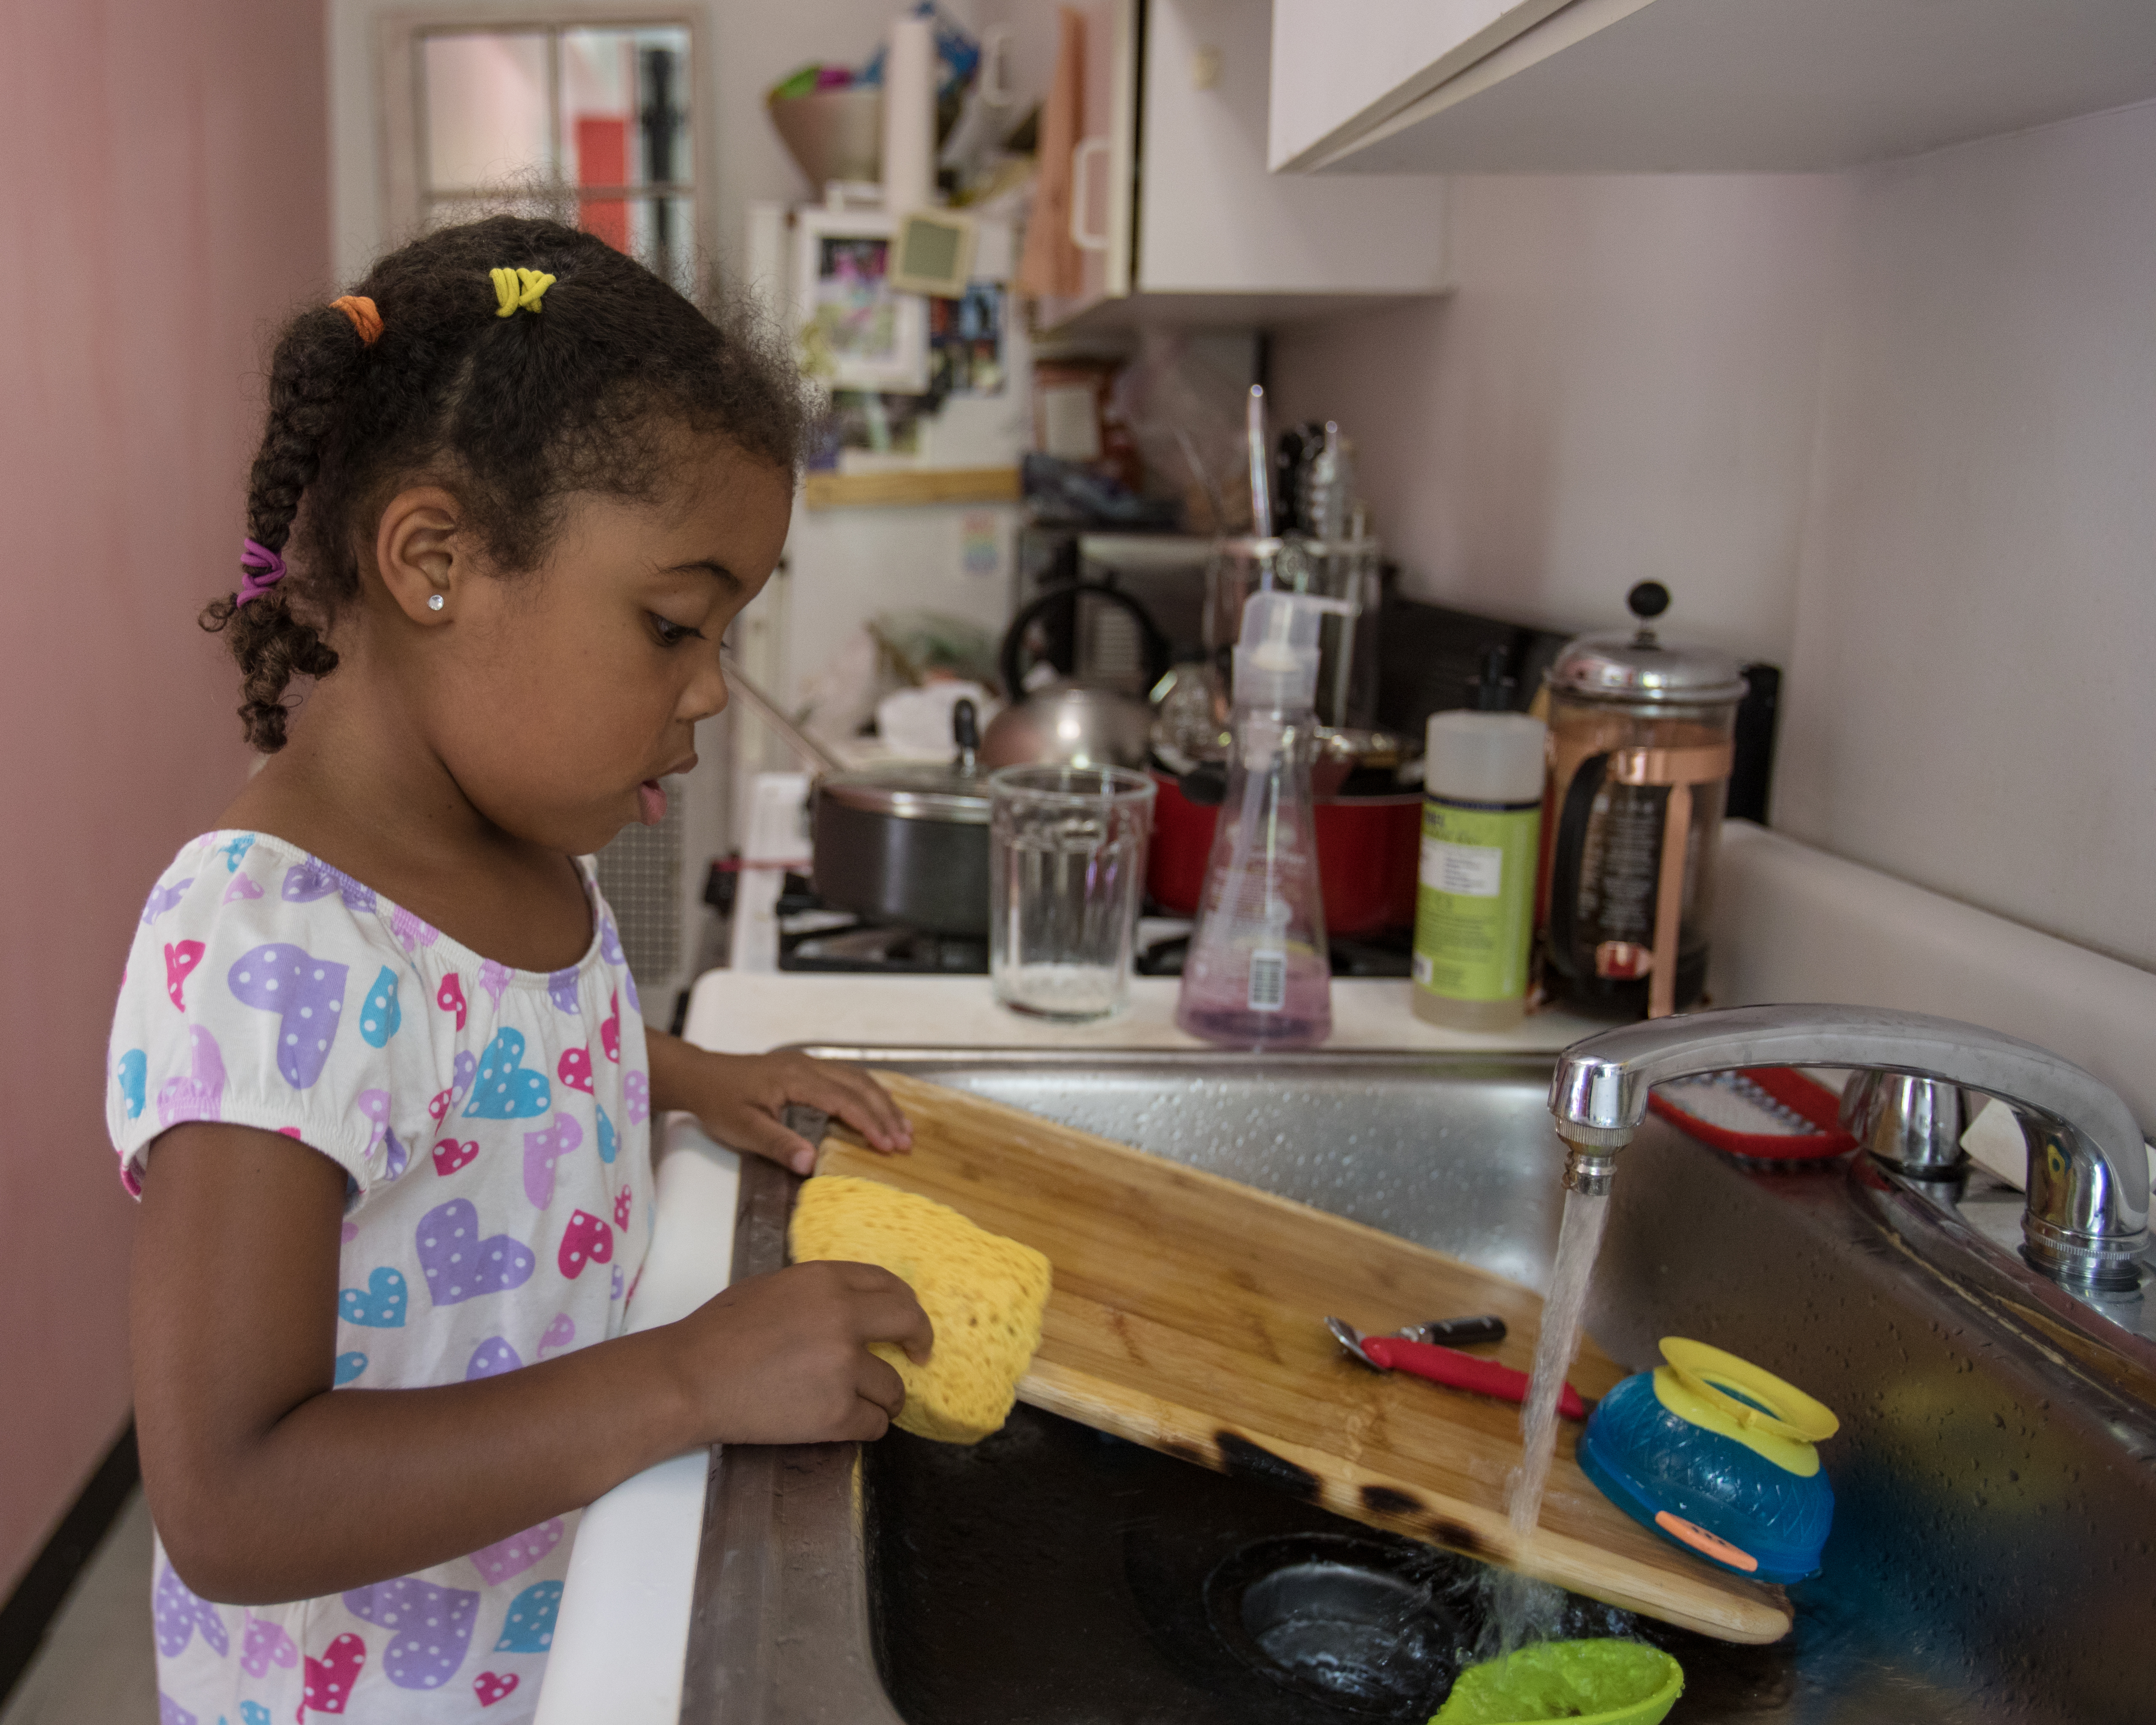 Ein junges Mädchen wäscht Geschirr in einer Küche ab | Quelle: Getty Images